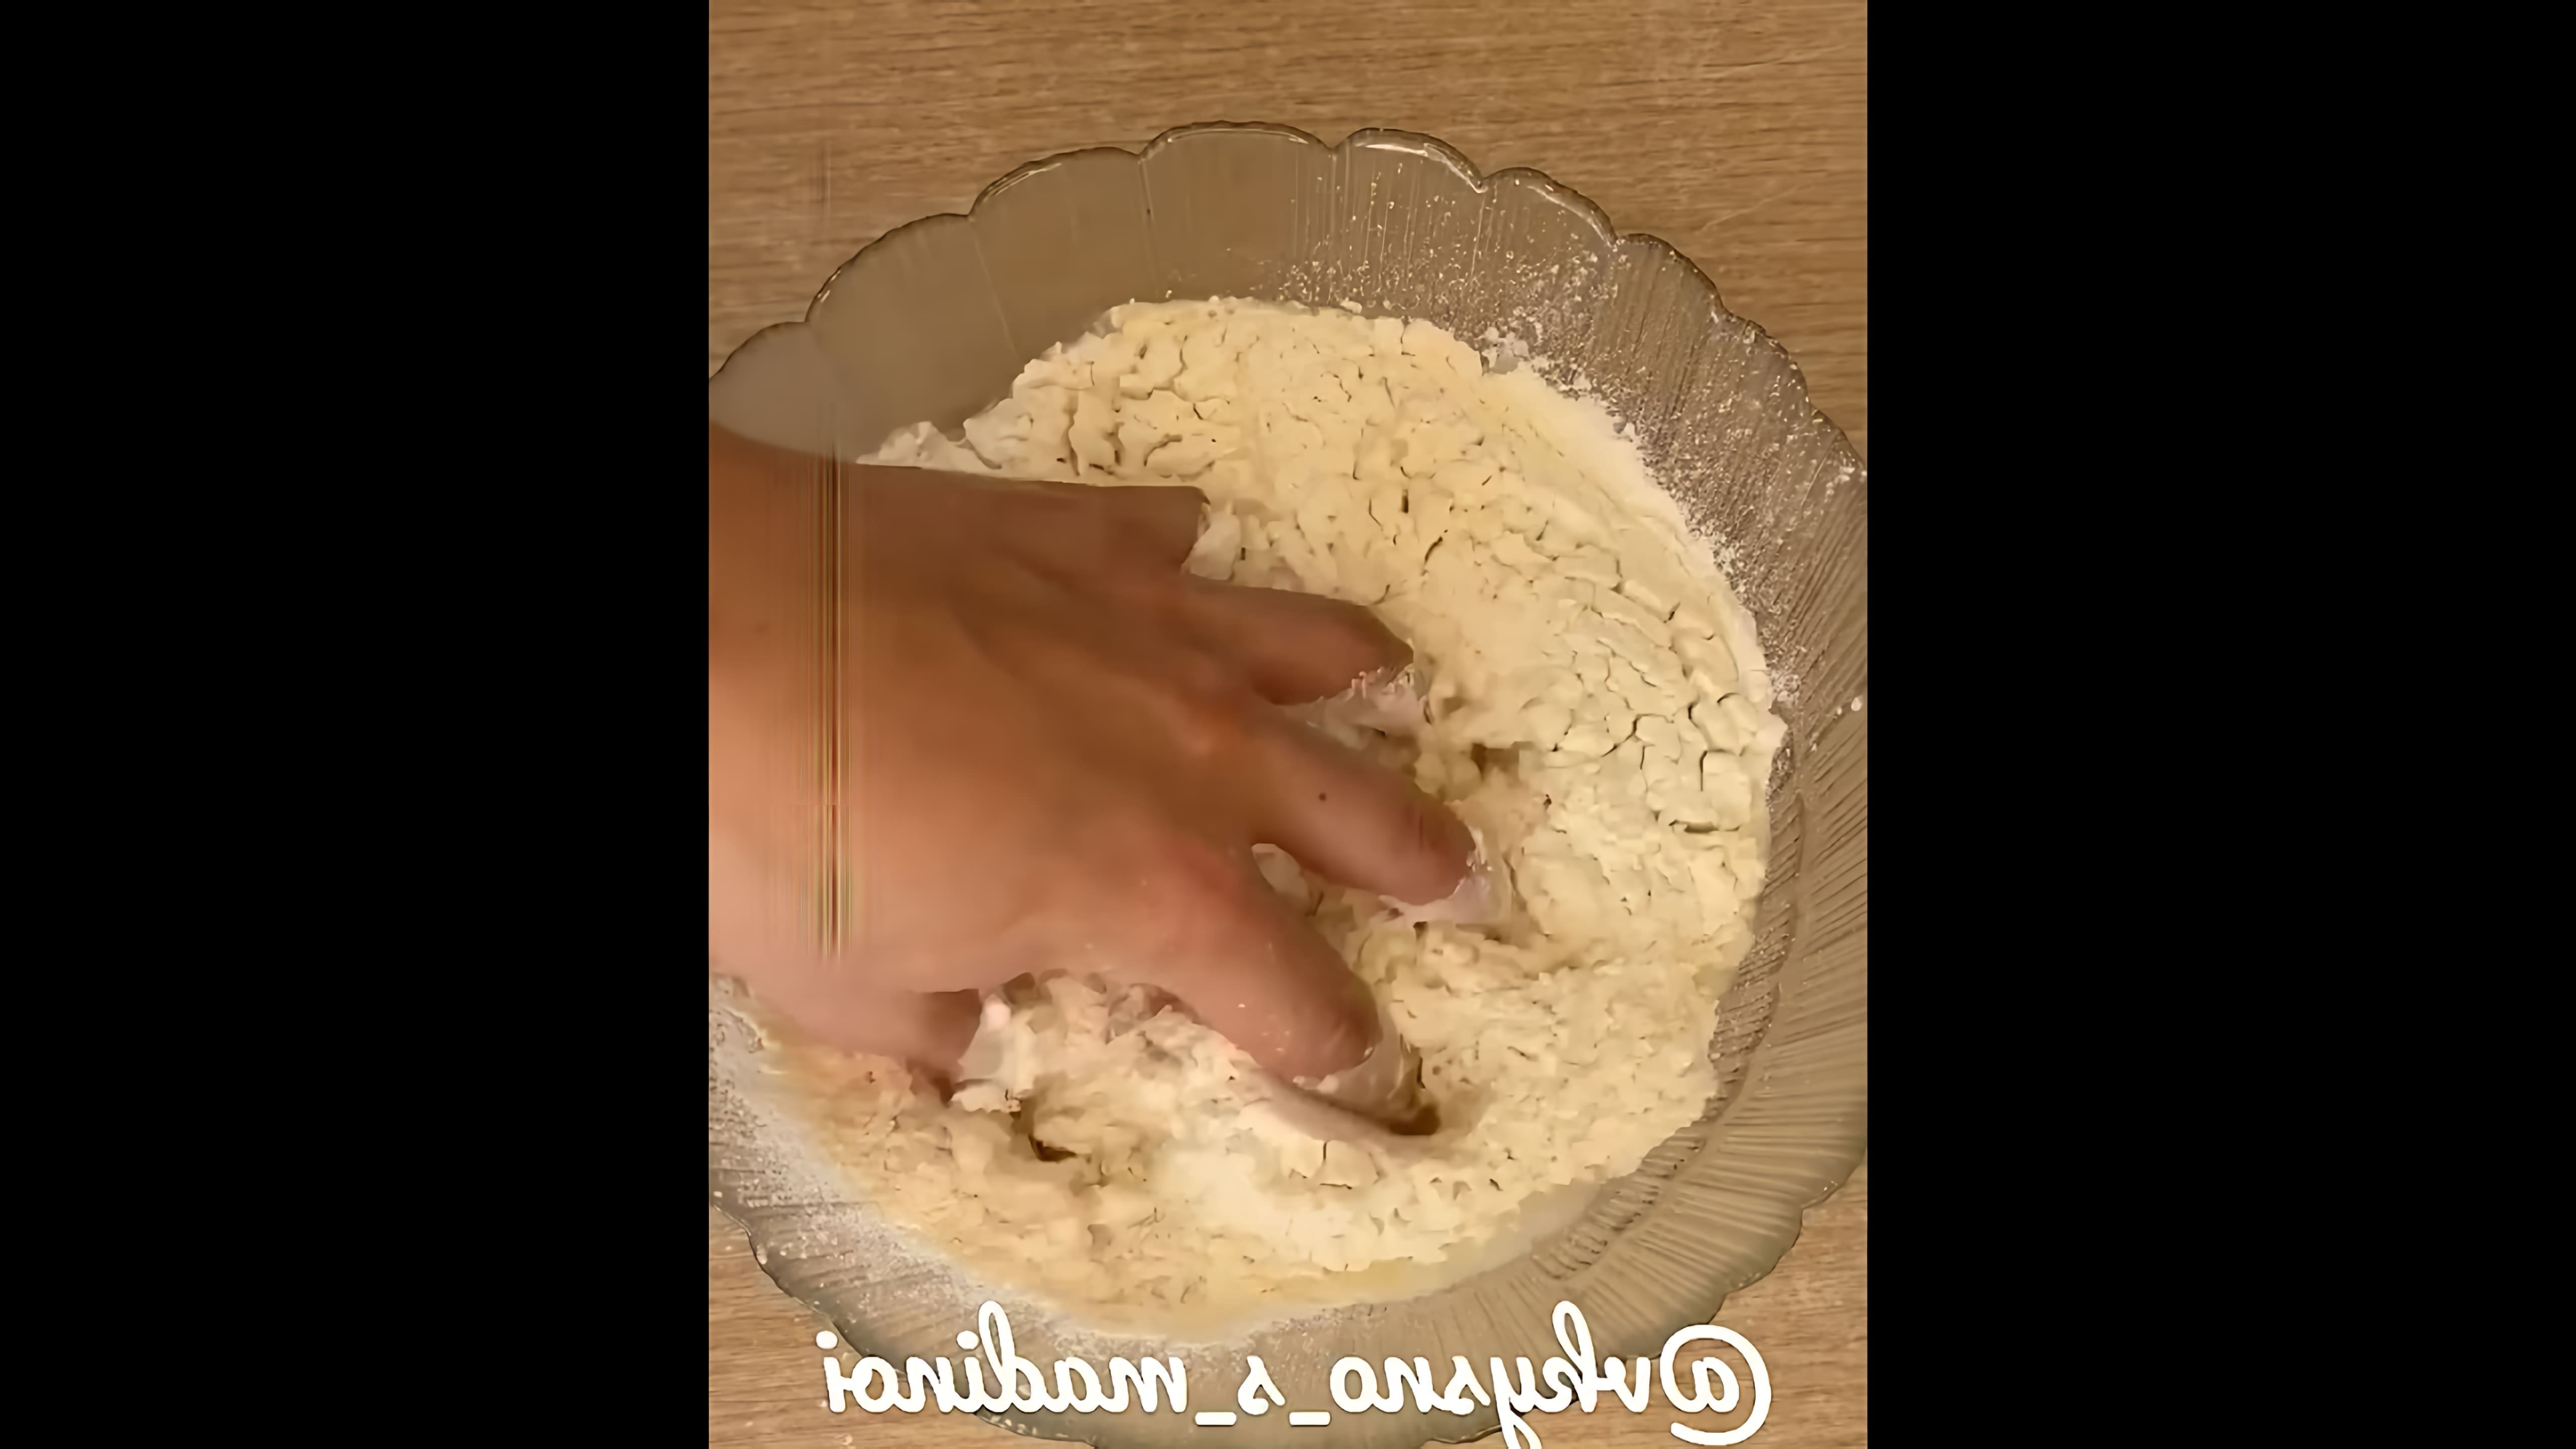 В этом видео мы видим, как готовится осетинский пирог с картошкой и сыром